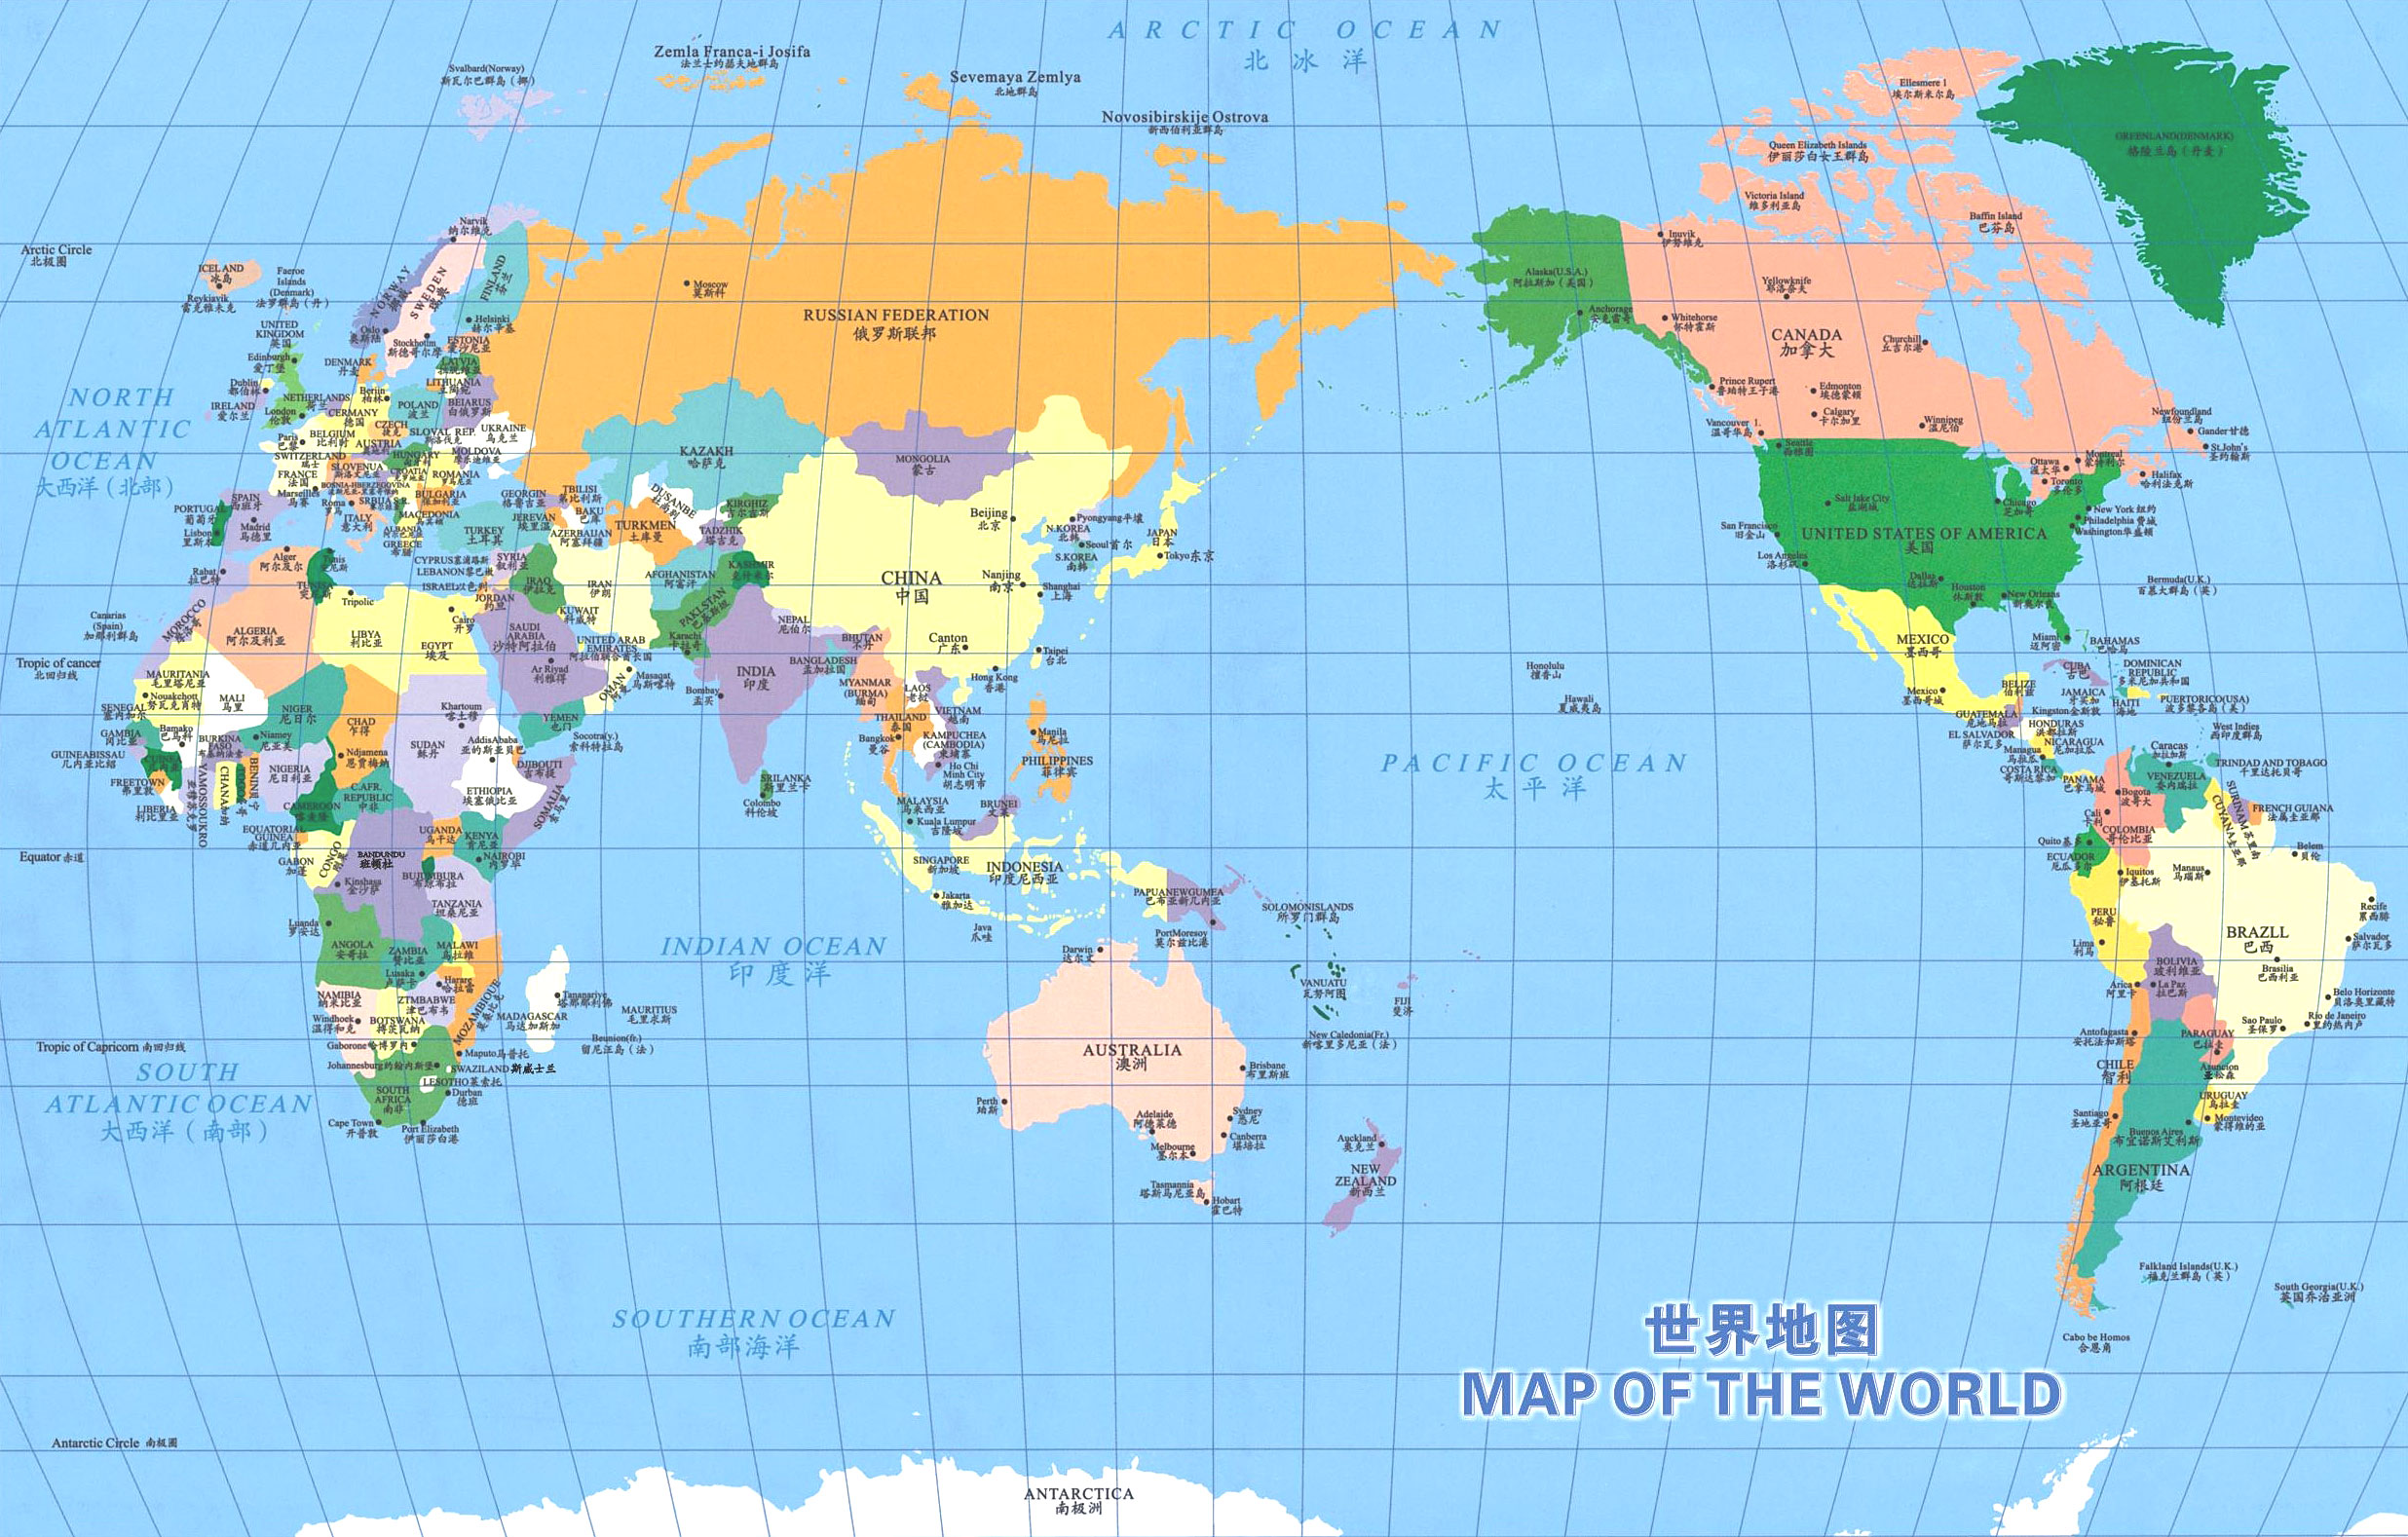 下面是2014年最新的世界地图(中英对照)